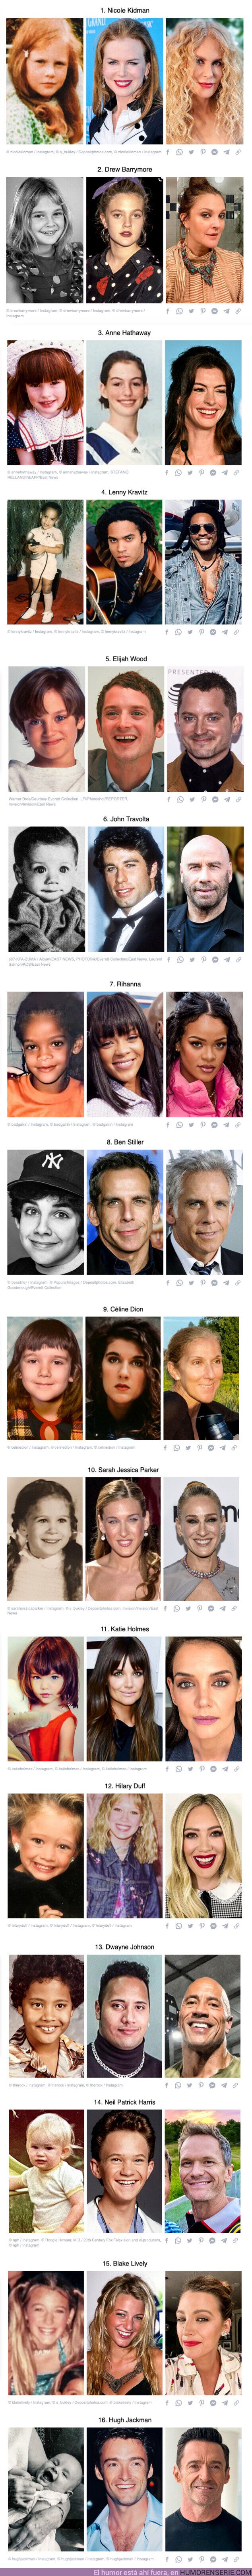 111409 - Fotos de la infancia de 16 famosos que te harán explotar la cabeza del cambio